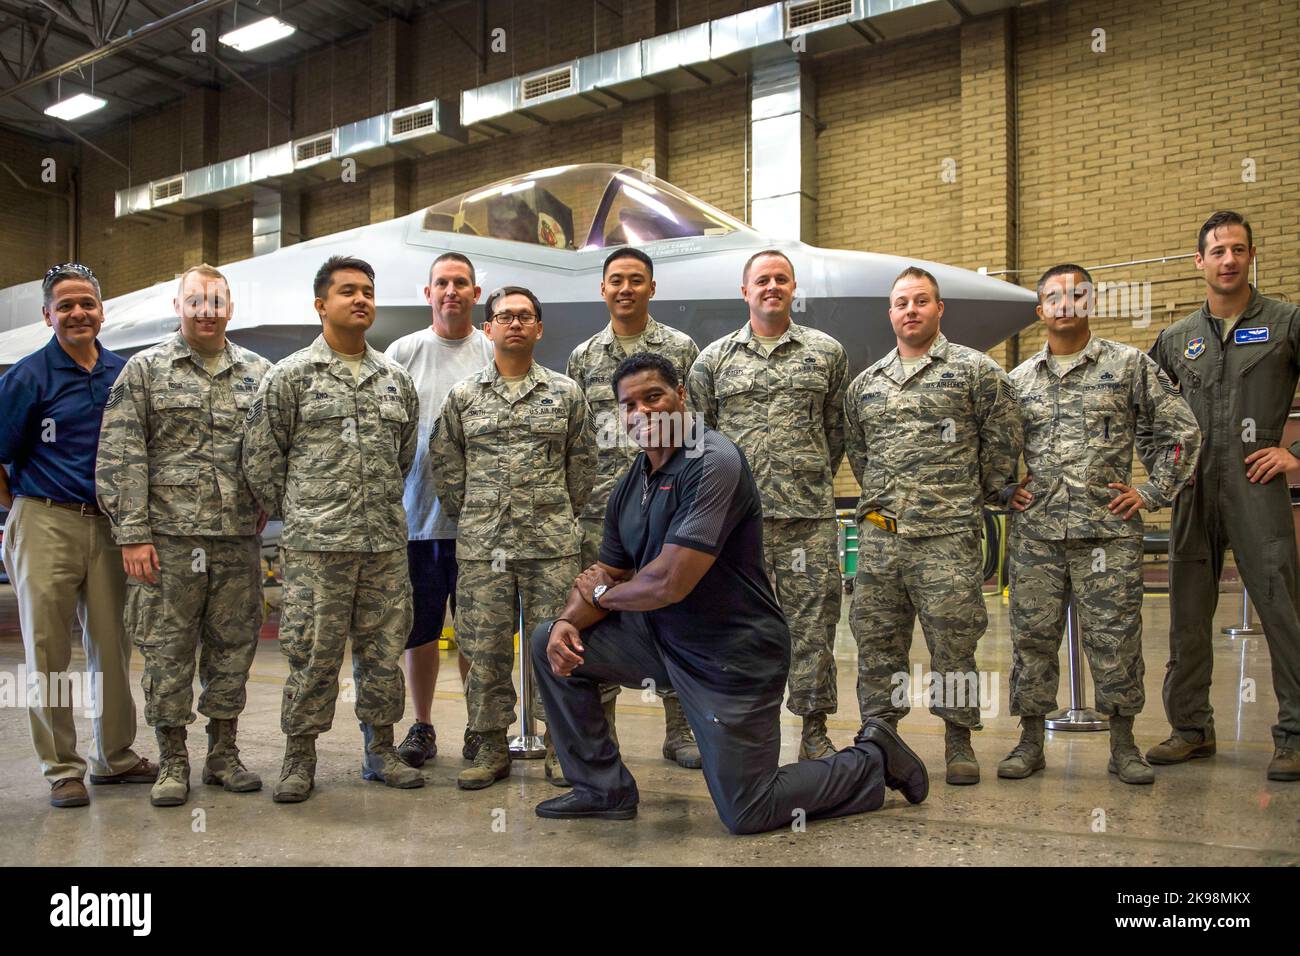 Herschel Walker, ancien athlète professionnel, prend une photo de groupe avec des aviateurs à la base aérienne de Luke, dans le comté de Maricopa, en Arizona, sur 3 octobre 2017. Walker visitait la base pour parler aux aviateurs de résilience. (ÉTATS-UNIS) Banque D'Images